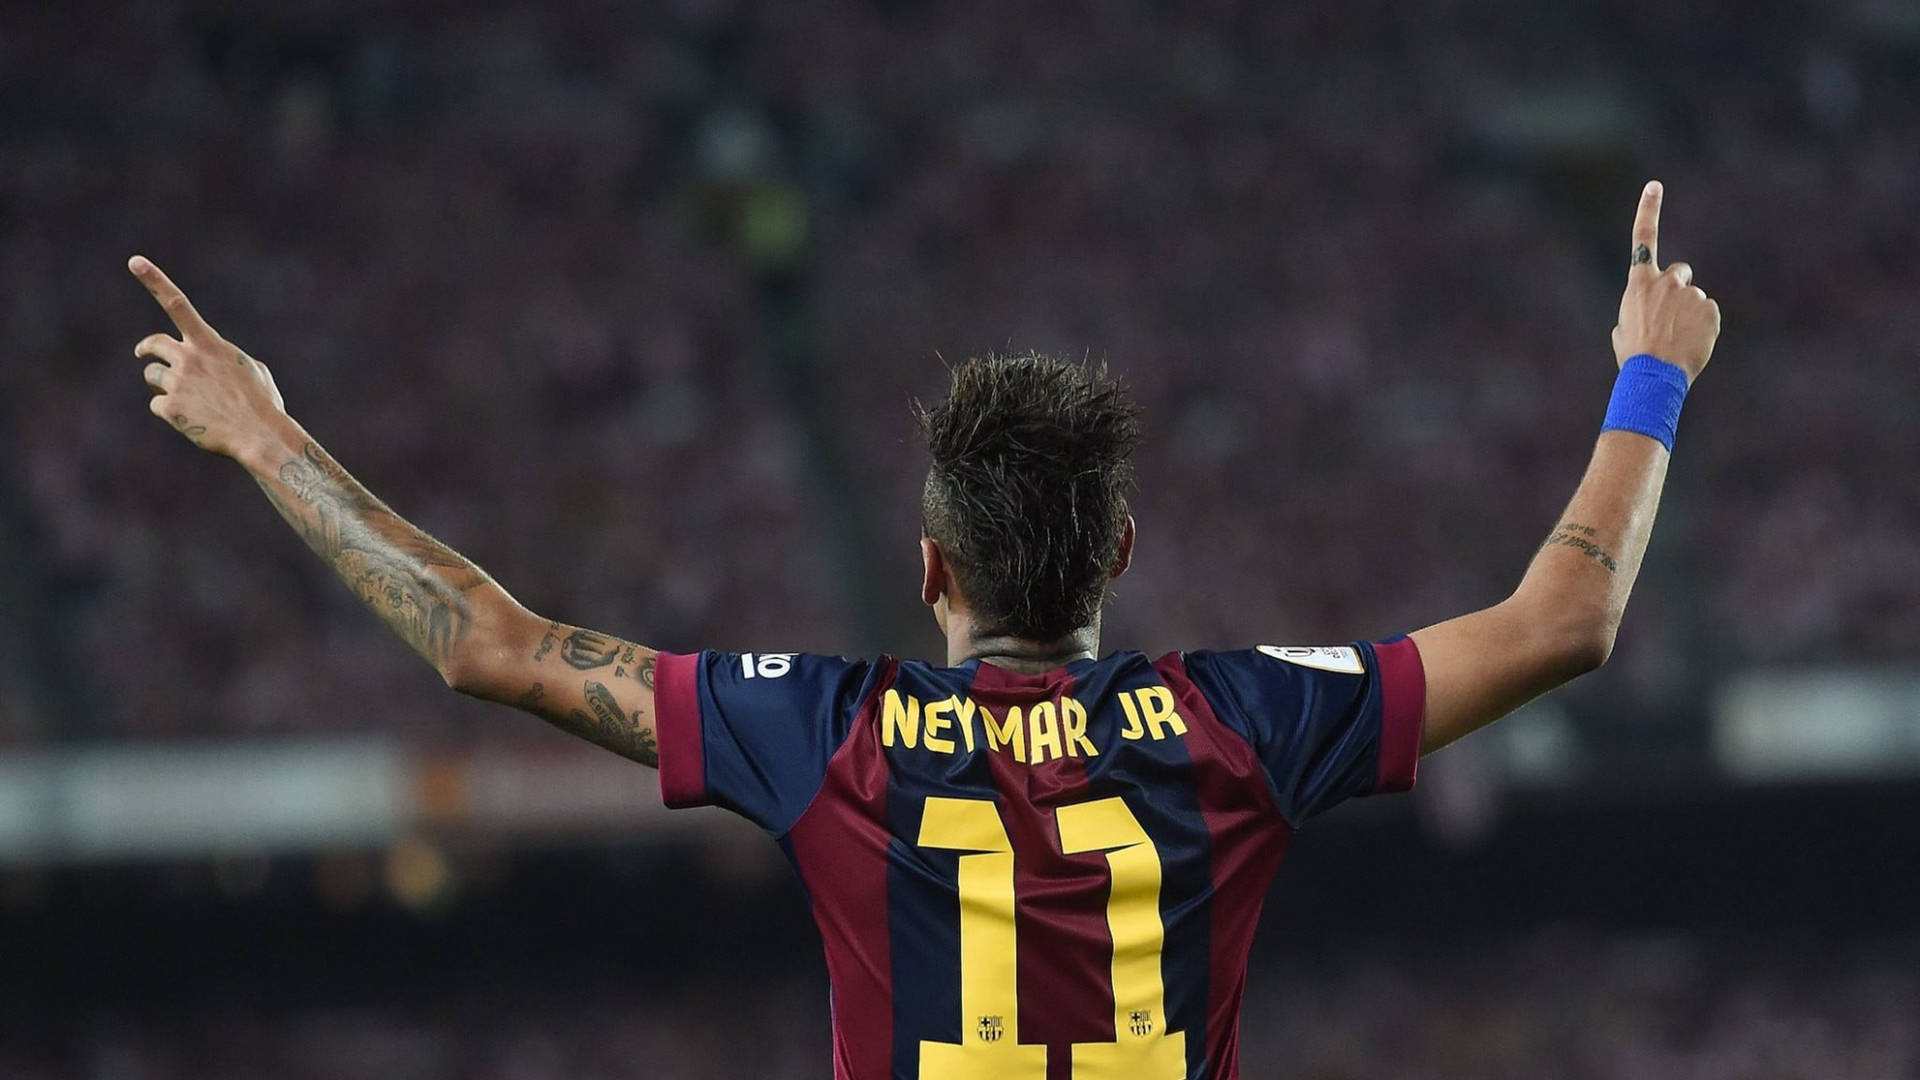 Free Neymar Wallpaper Downloads, [200+] Neymar Wallpapers for FREE |  